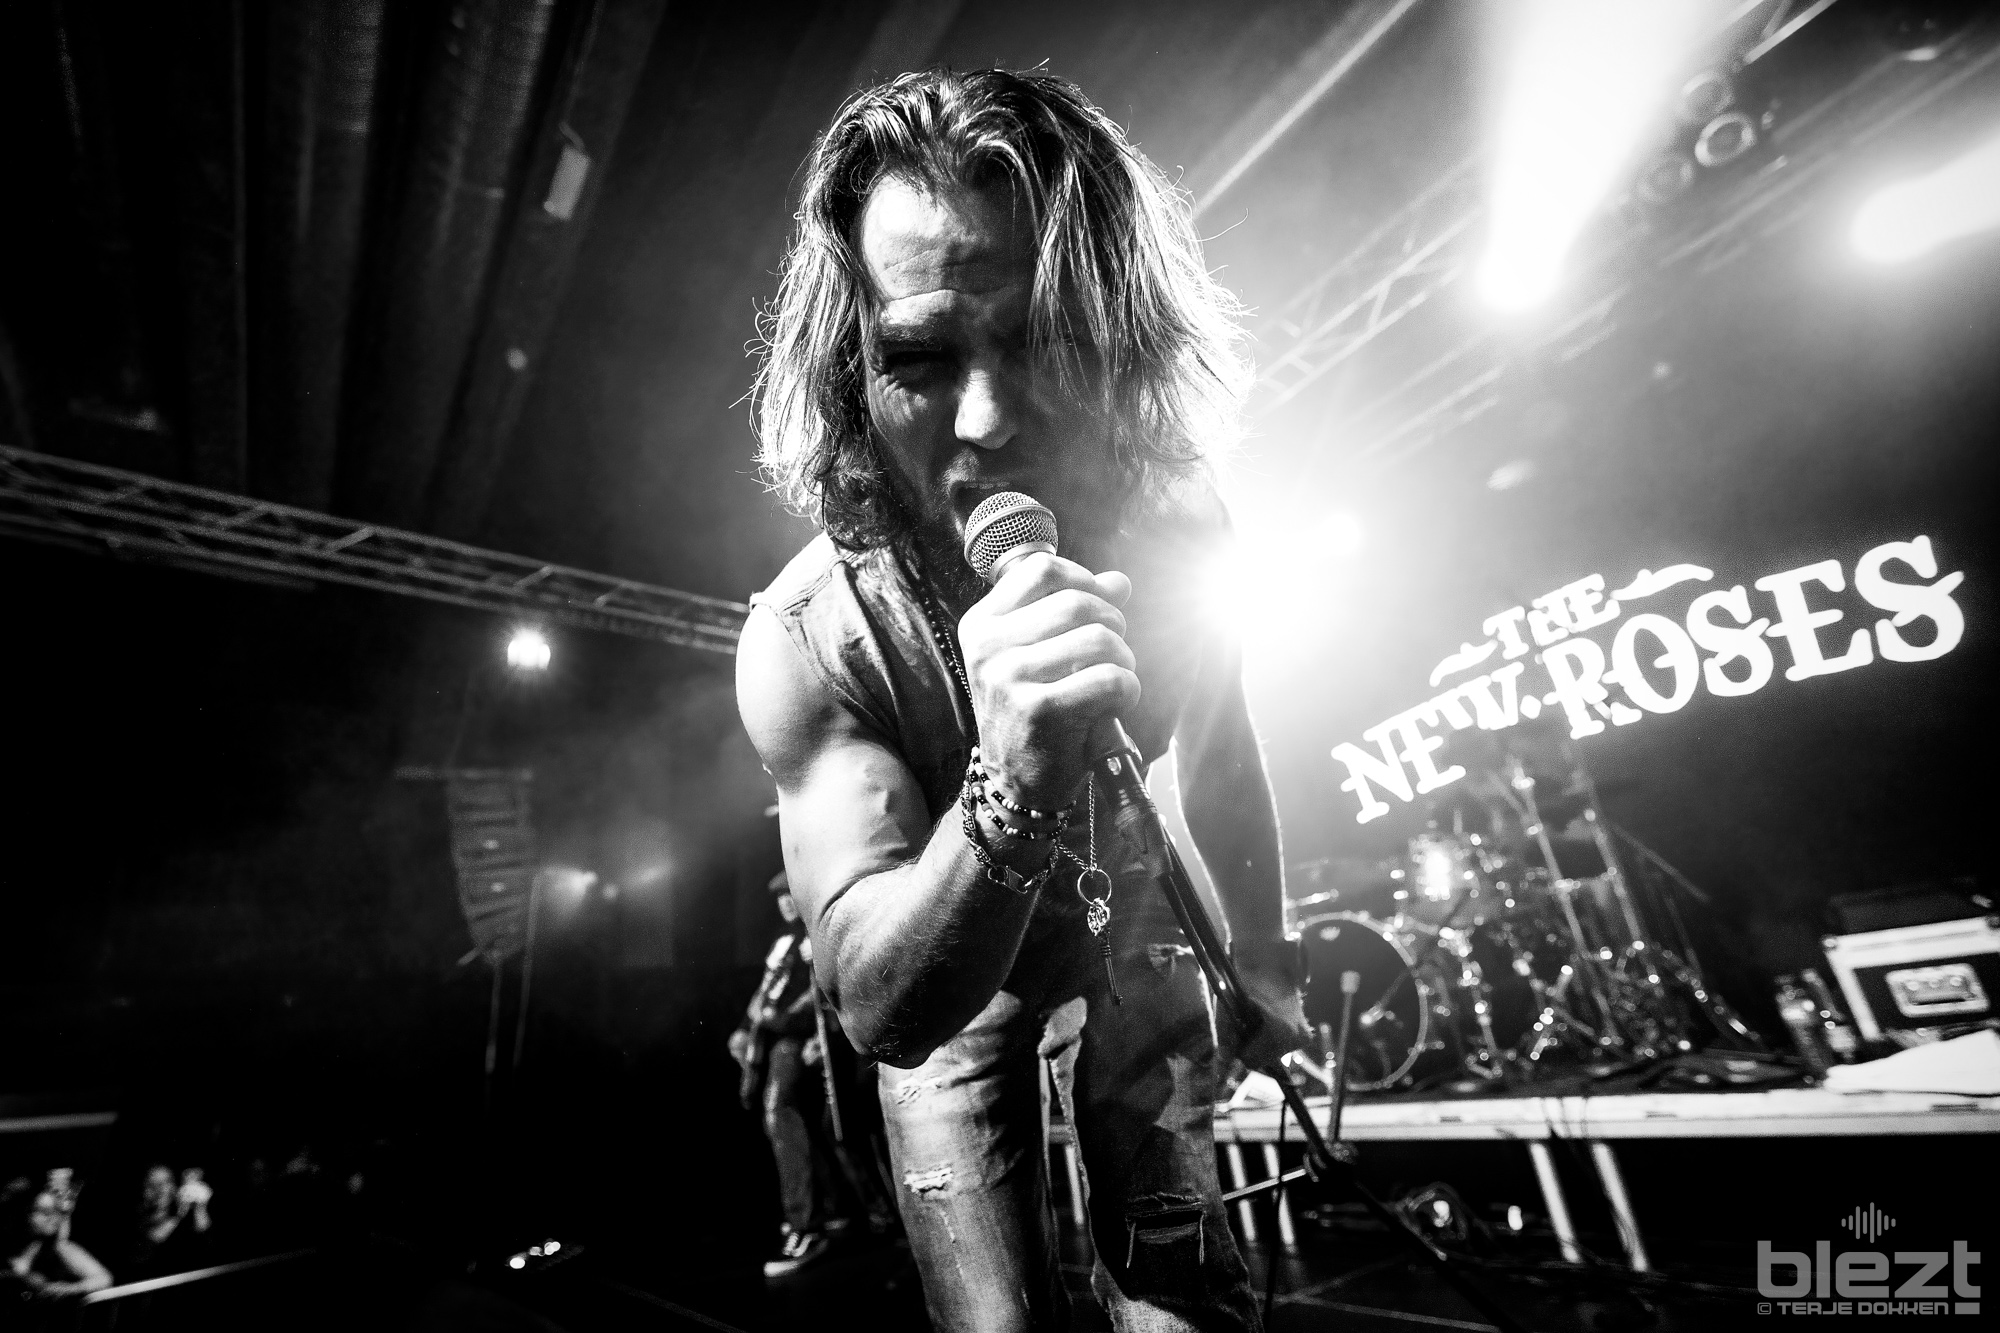 The New Roses live på Oslo Rock Fest 2023 - BLEZT